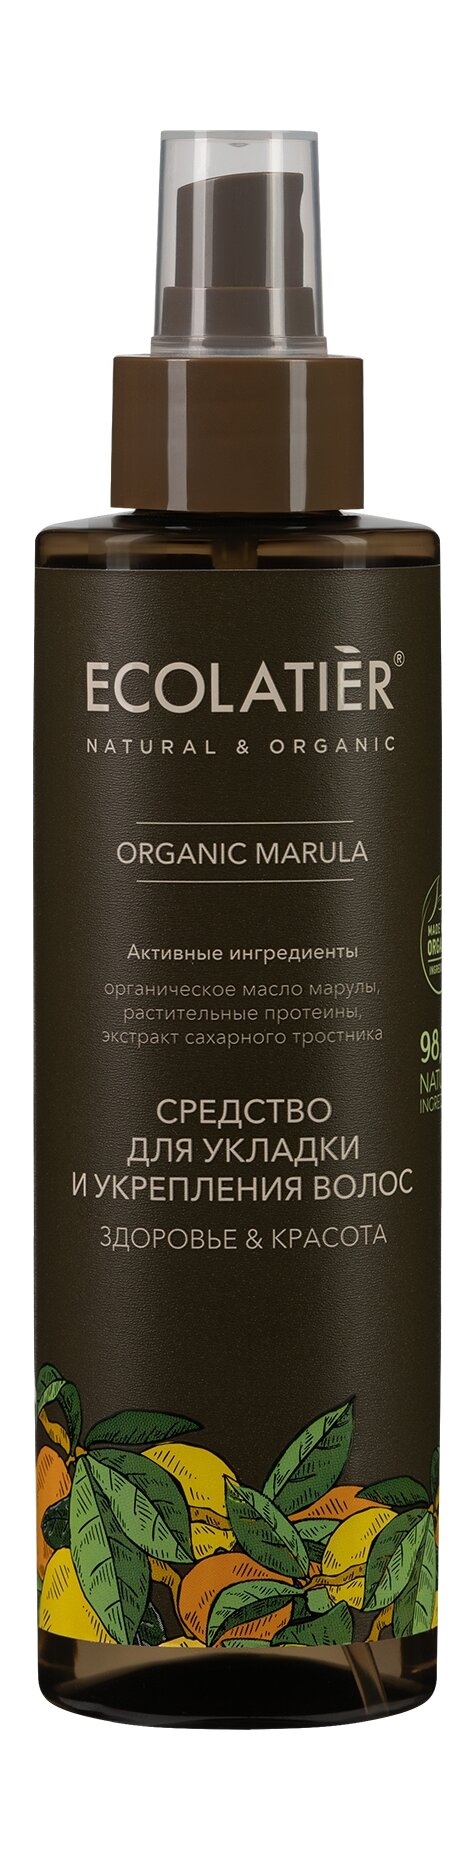 ECOLATIER Средство для укладки и укрепления волос Здоровье & Красота Organic Marula, 200 мл